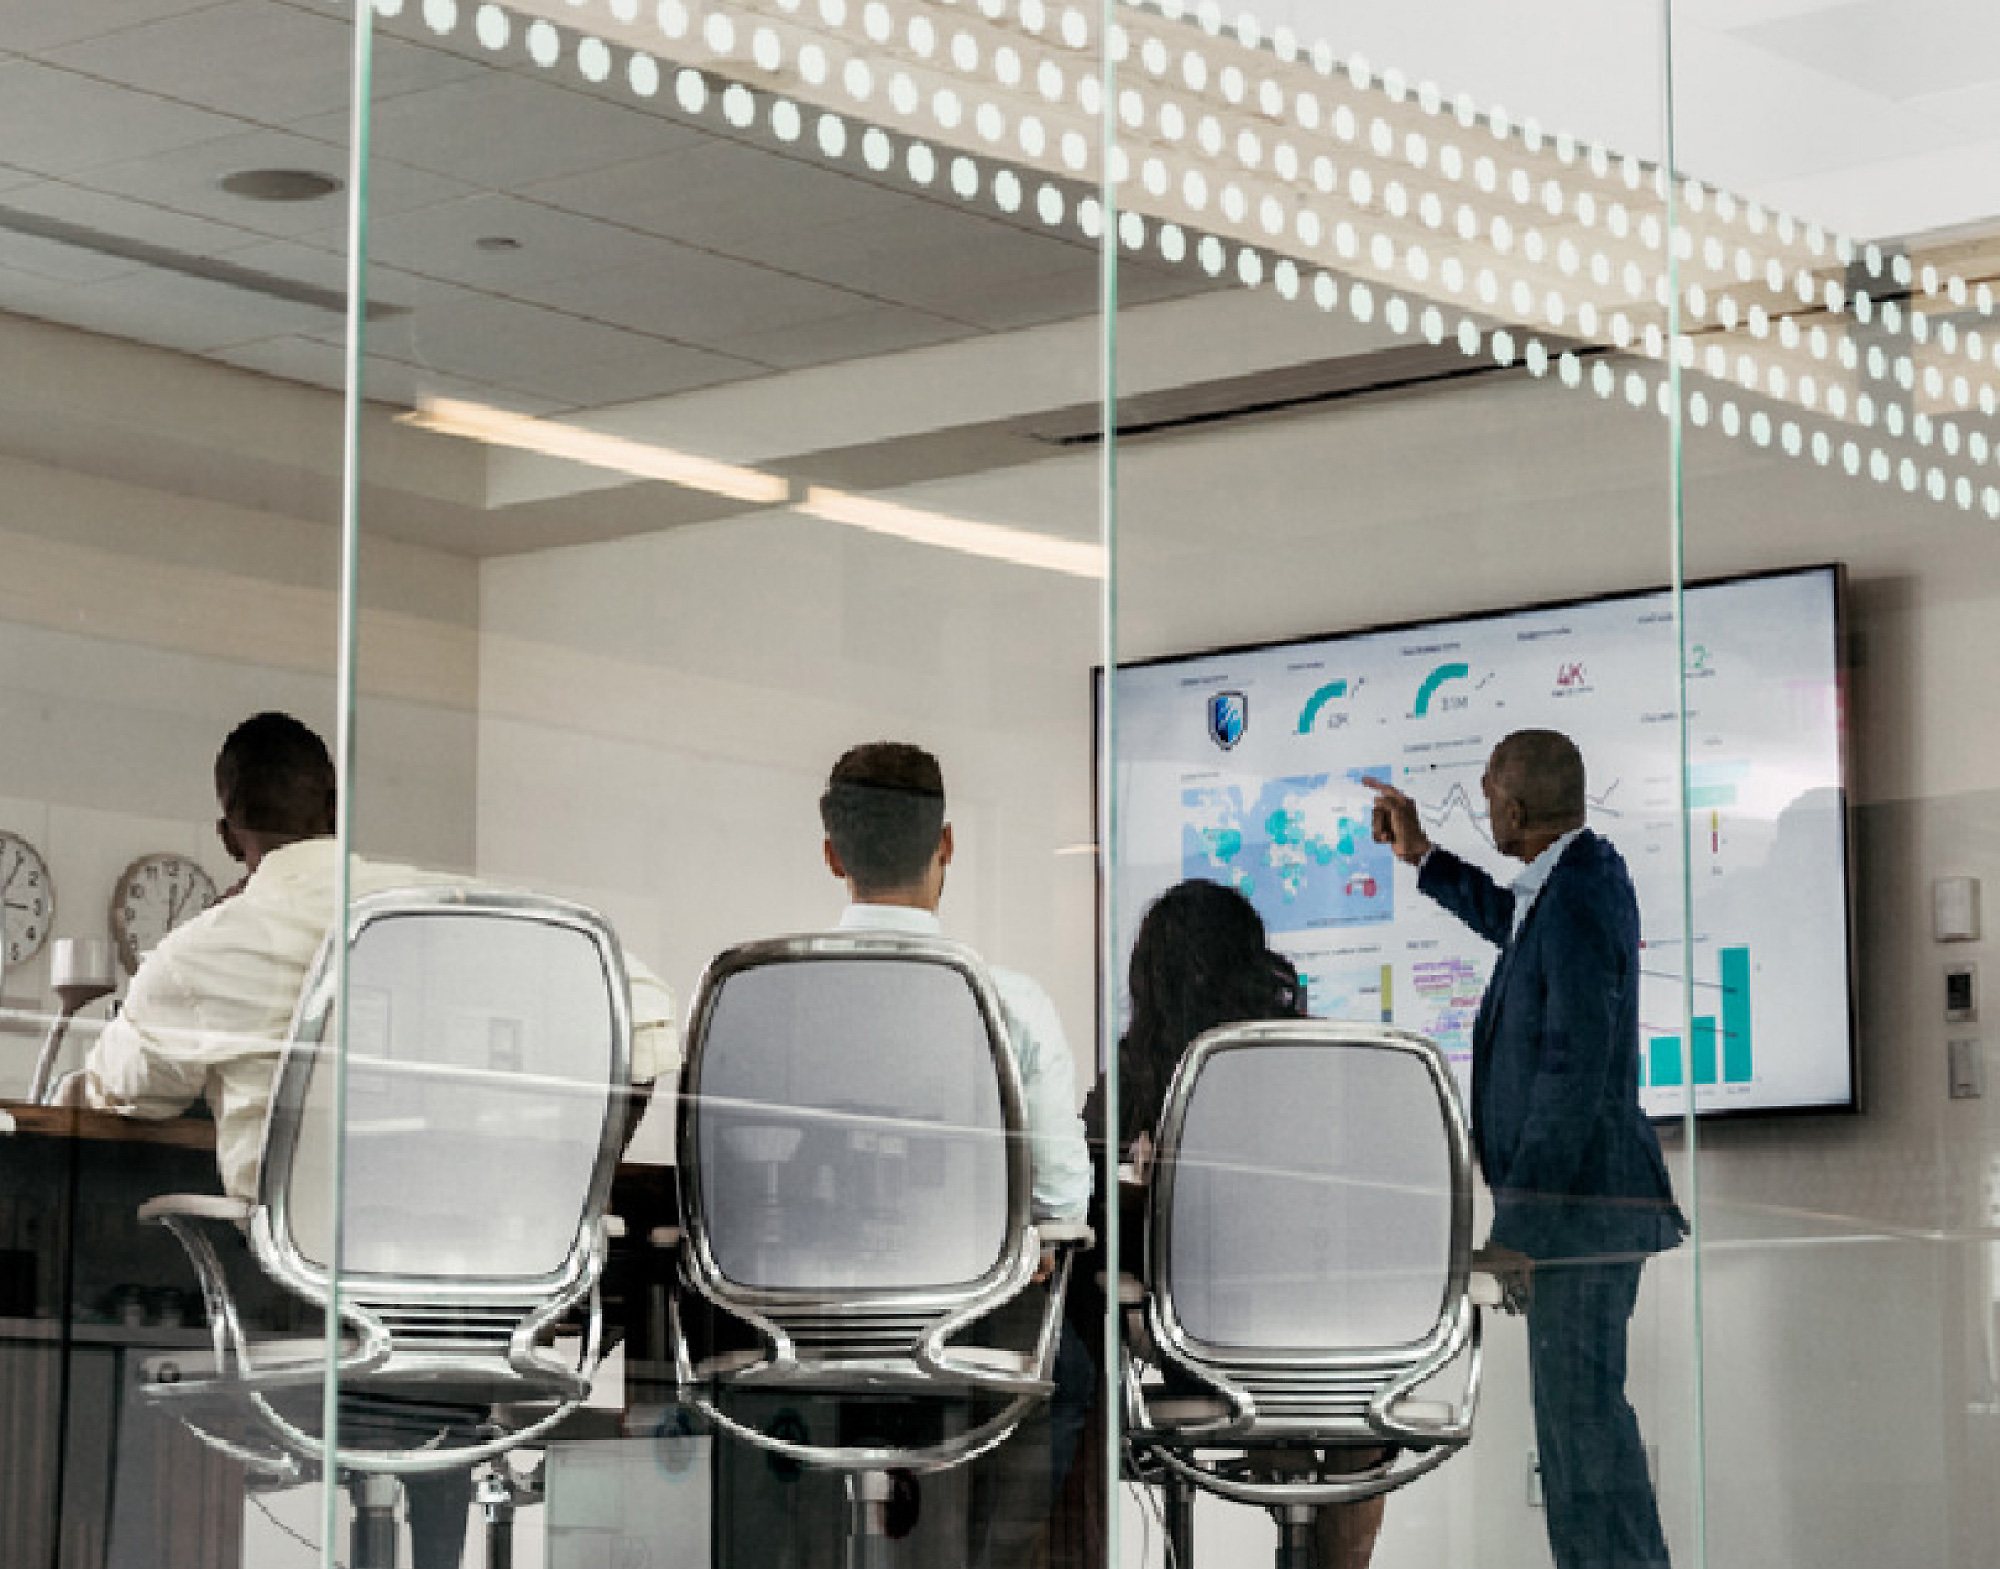 四位專業人士在會議室中，透過玻璃隔牆可看到其中一位指著大型螢幕上顯示的數位資料。